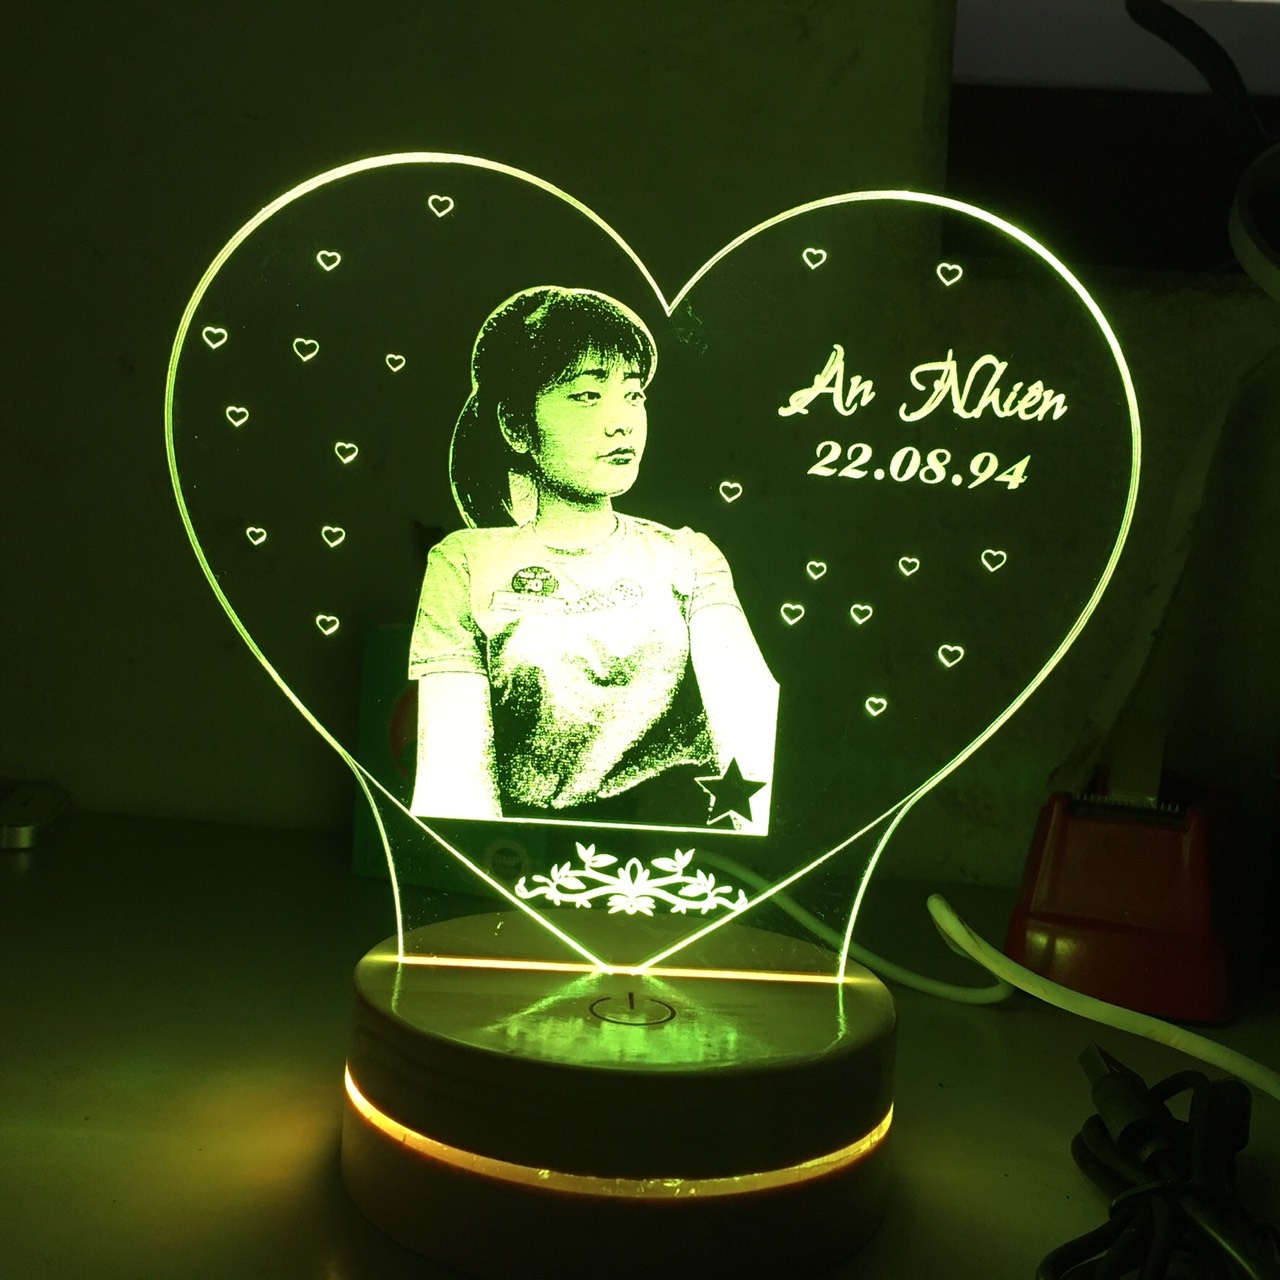 Đèn led 3D khắc ảnh chân dung - 16 màu nút cảm ứng và điều khiển